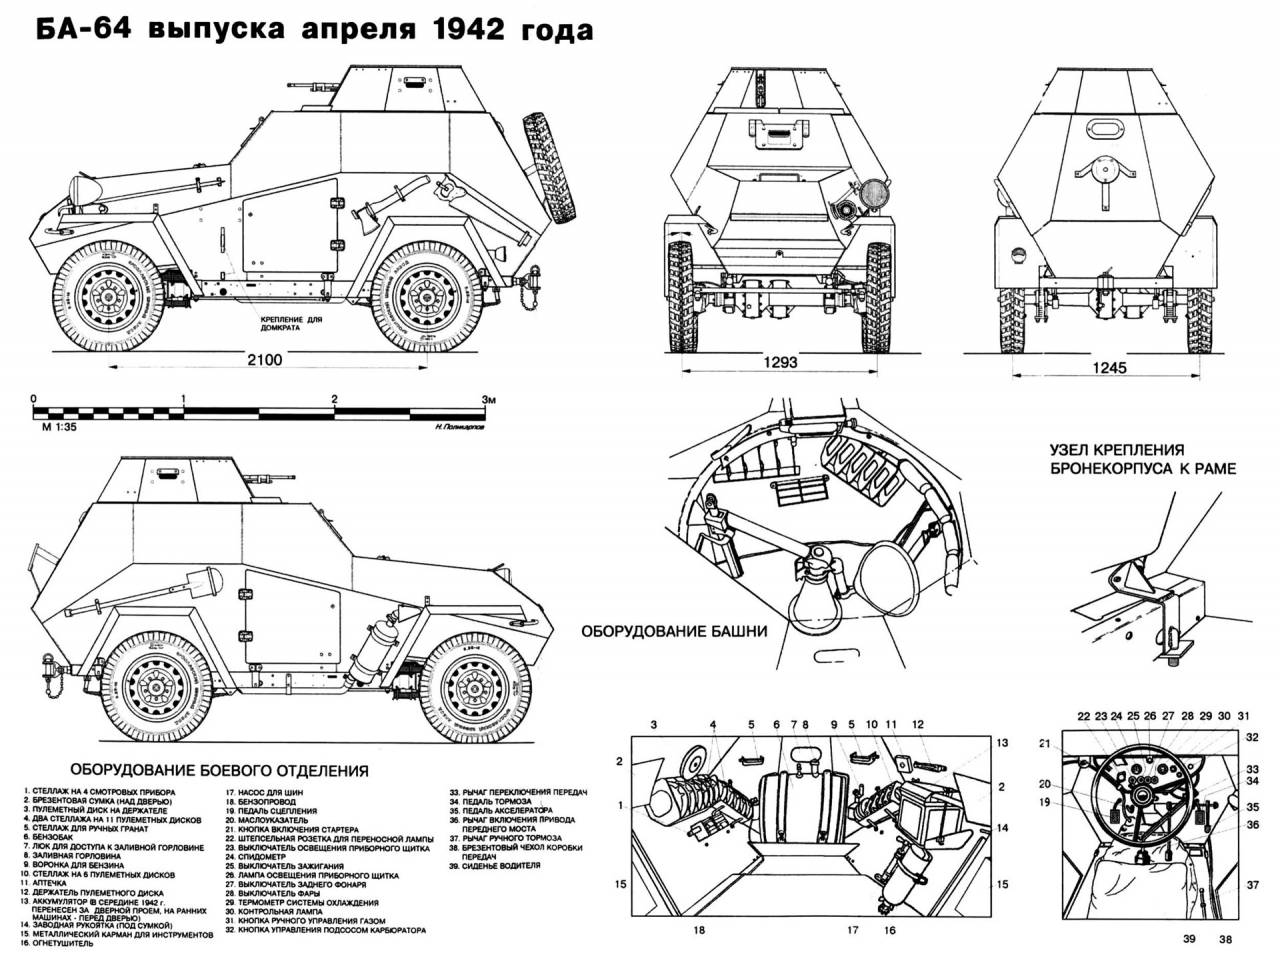 Бронеавтомобиль ба-10 двигатель, вес, размеры, вооружение